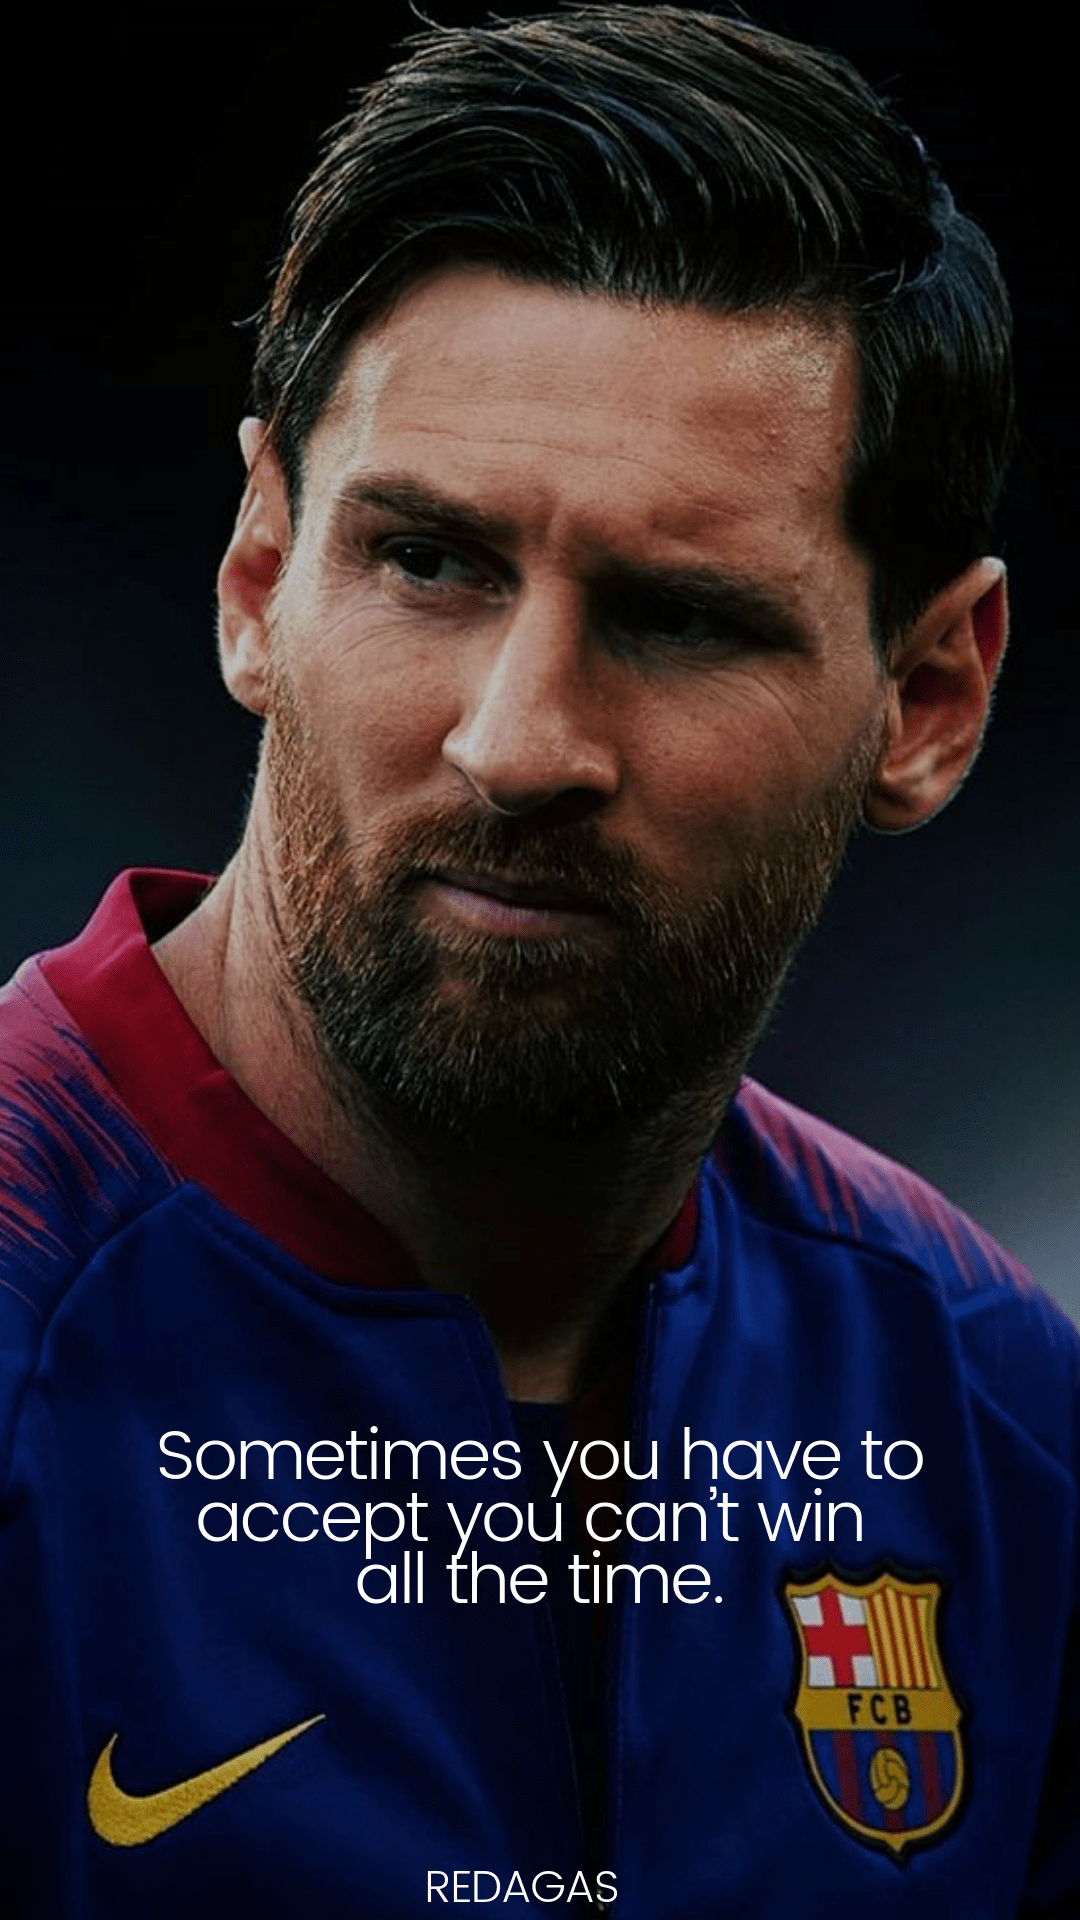 Những bức ảnh nền với những triết lý rất động lực của Messi sẽ khiến bạn cảm thấy khơi gợi, tạo cho mình một động lực mới để tiếp tục đam mê cuộc sống của mình.